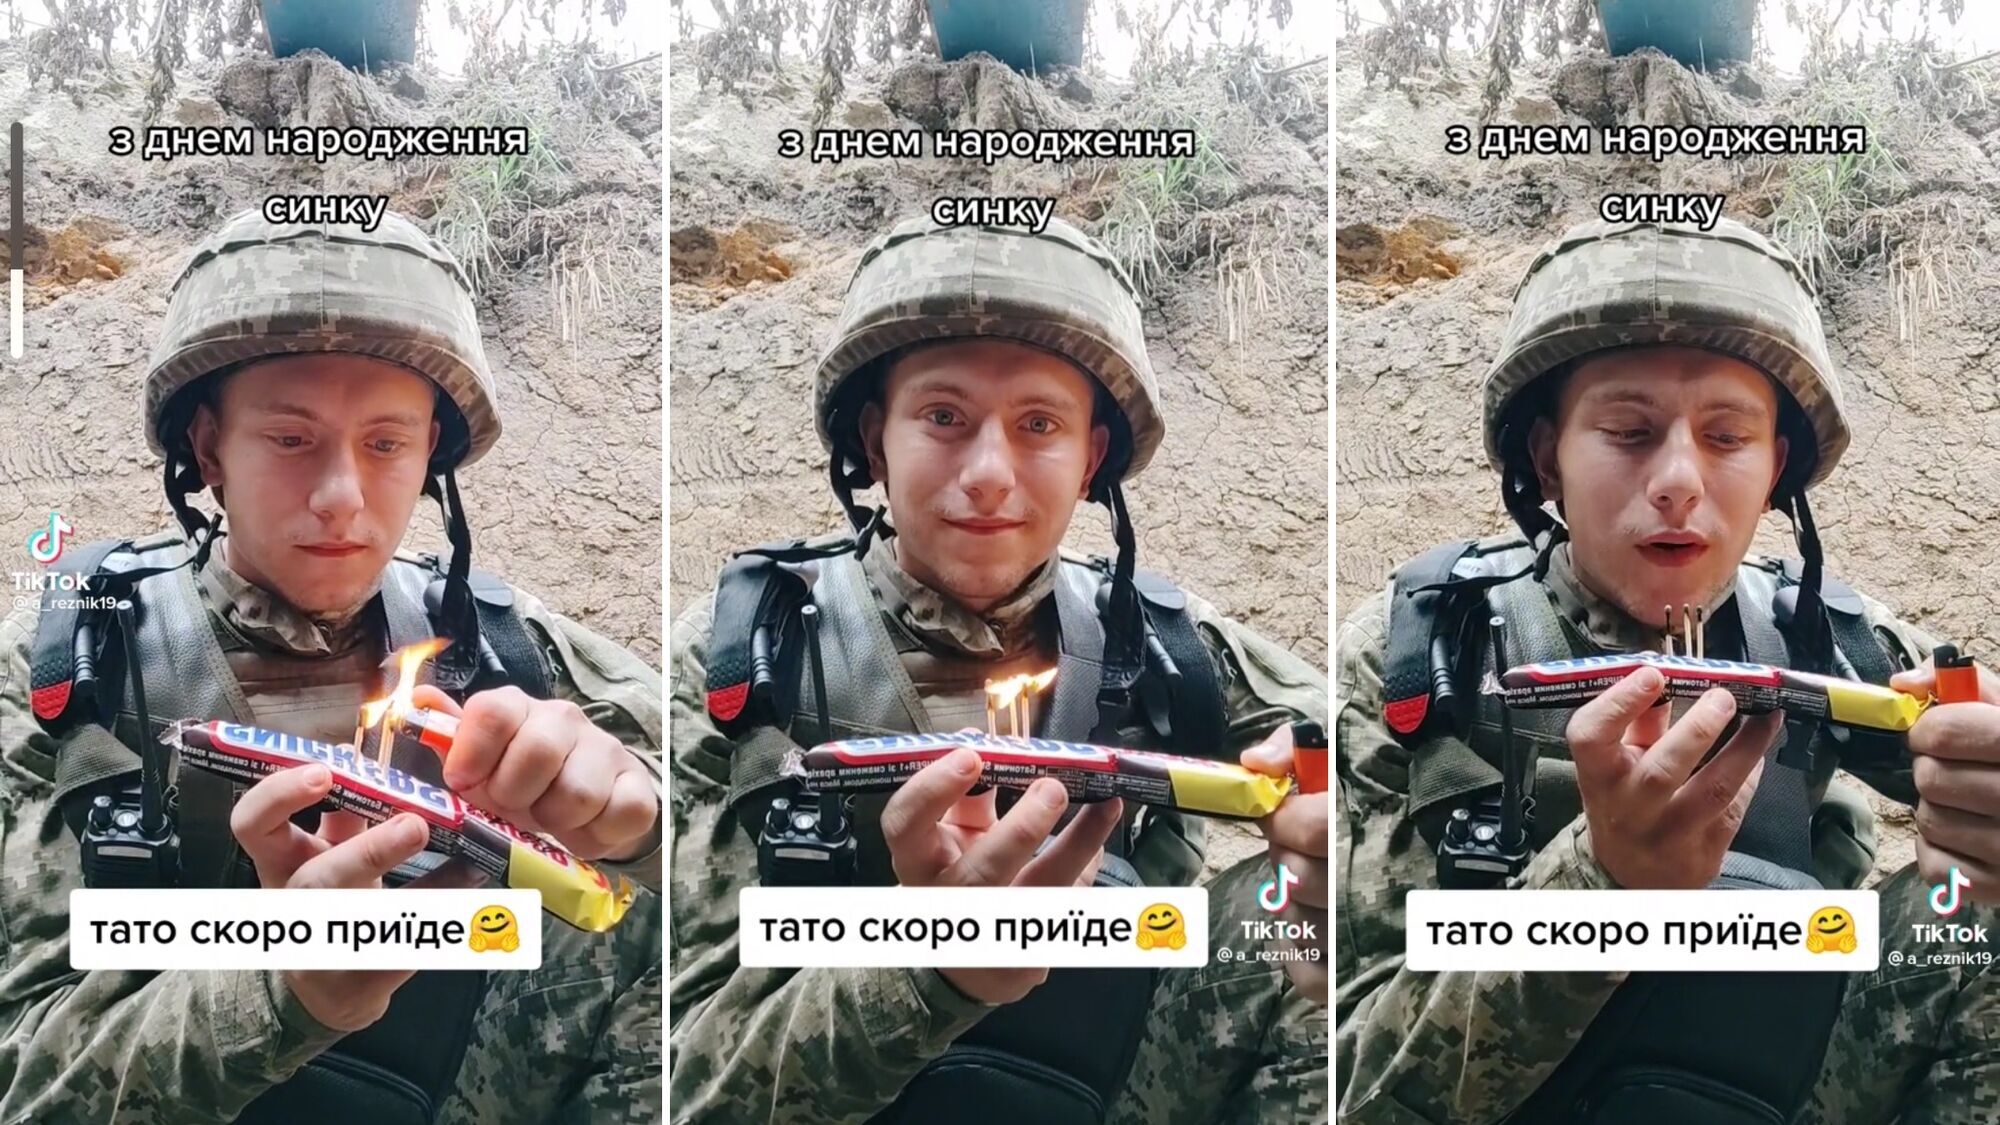 ''Тато скоро приїде'': відео українського воїна, який вітає сина з днем народження з фронту, зворушило мережу до сліз